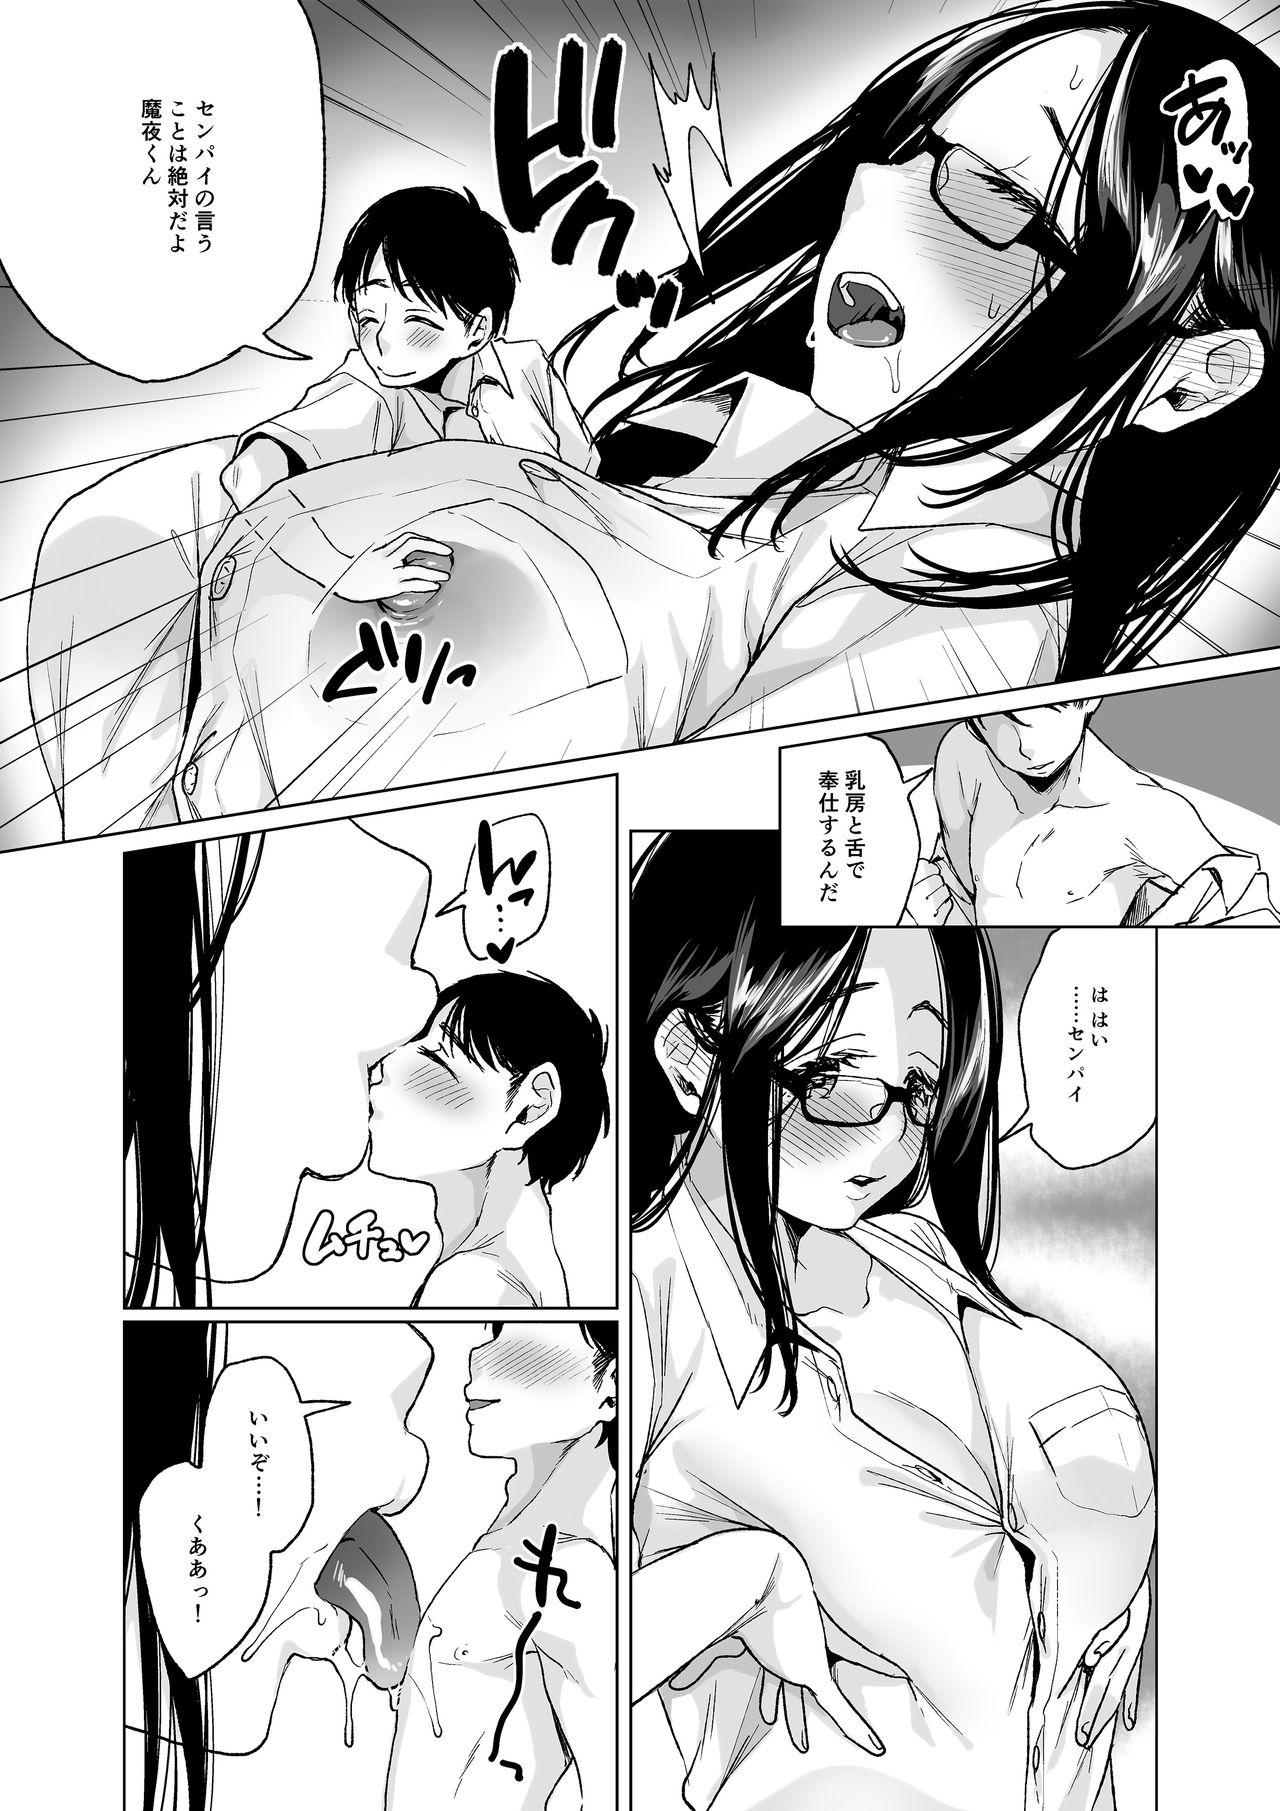 Humiliation Pov MM Vol. 50 Shumatsu wa Oppai ni Yosete♥ Butts - Page 7